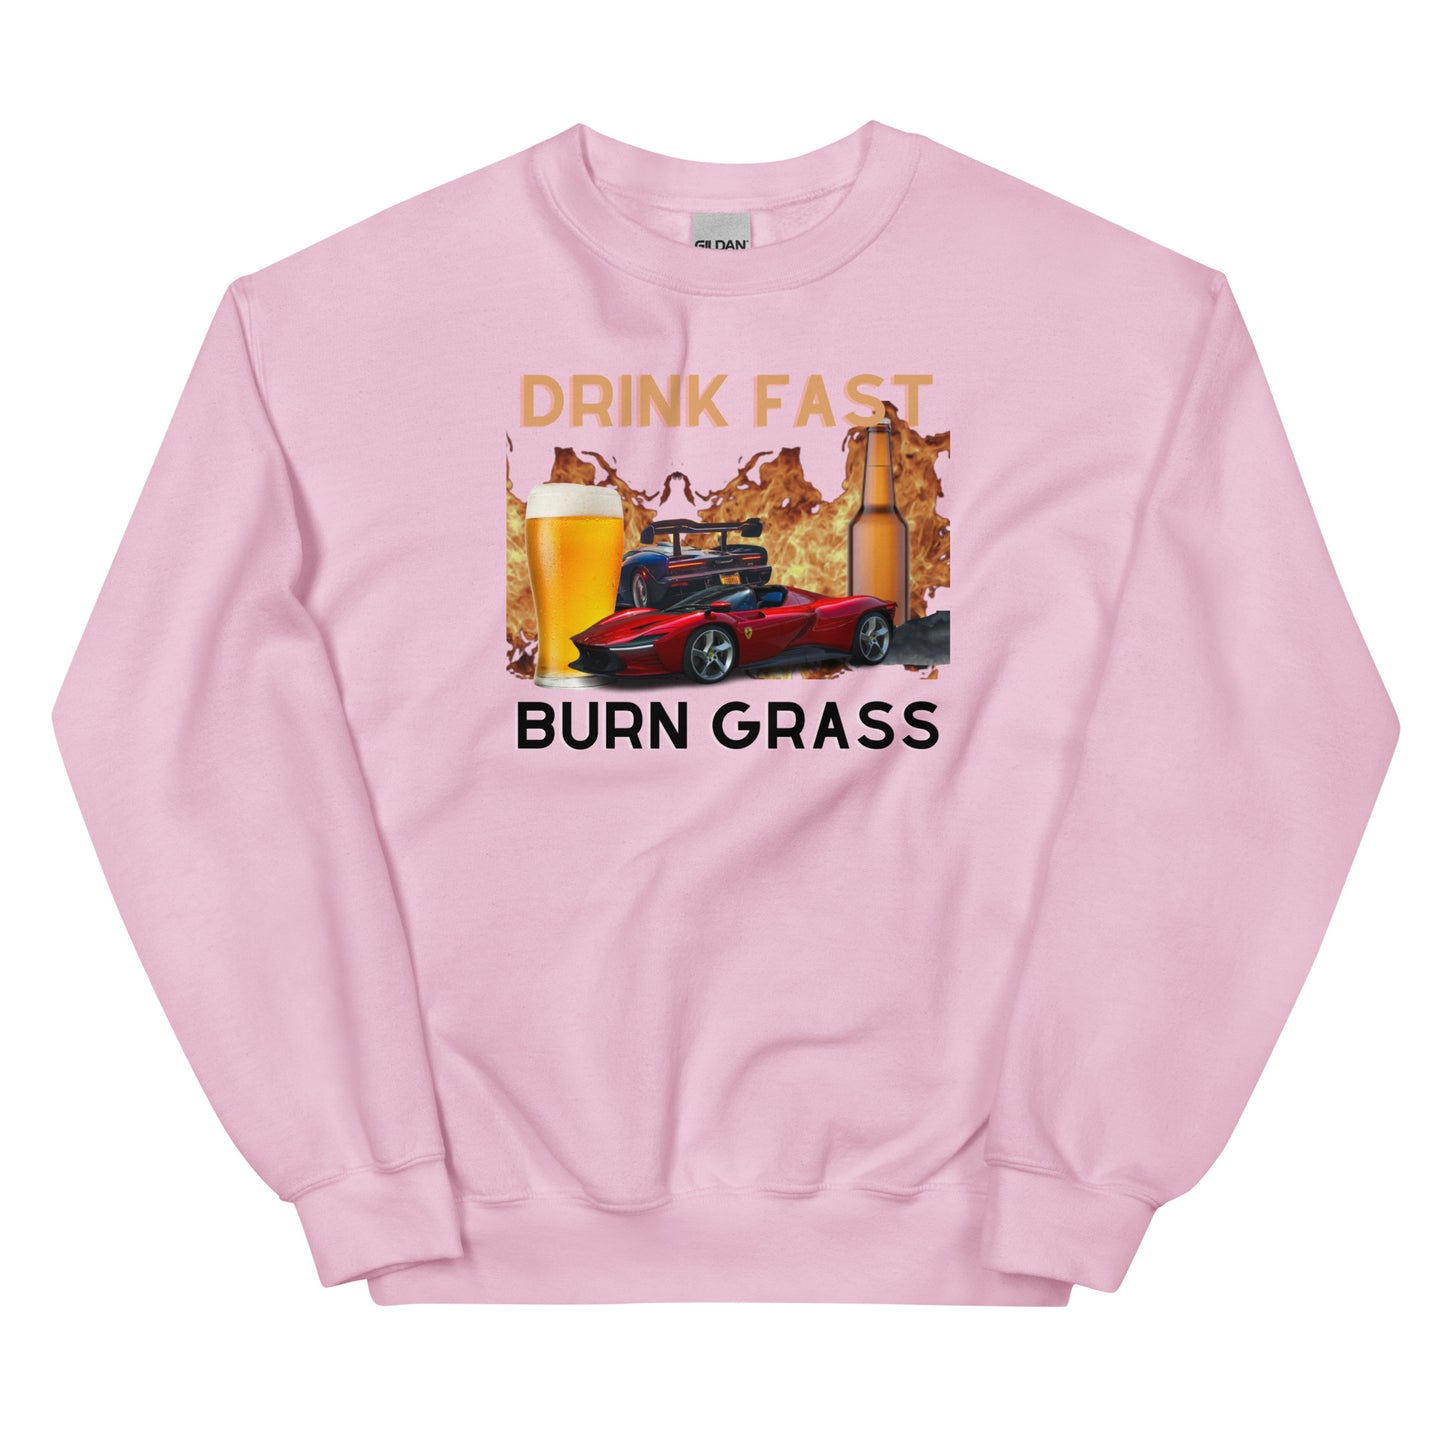 DRINK FAST BURN GRASS